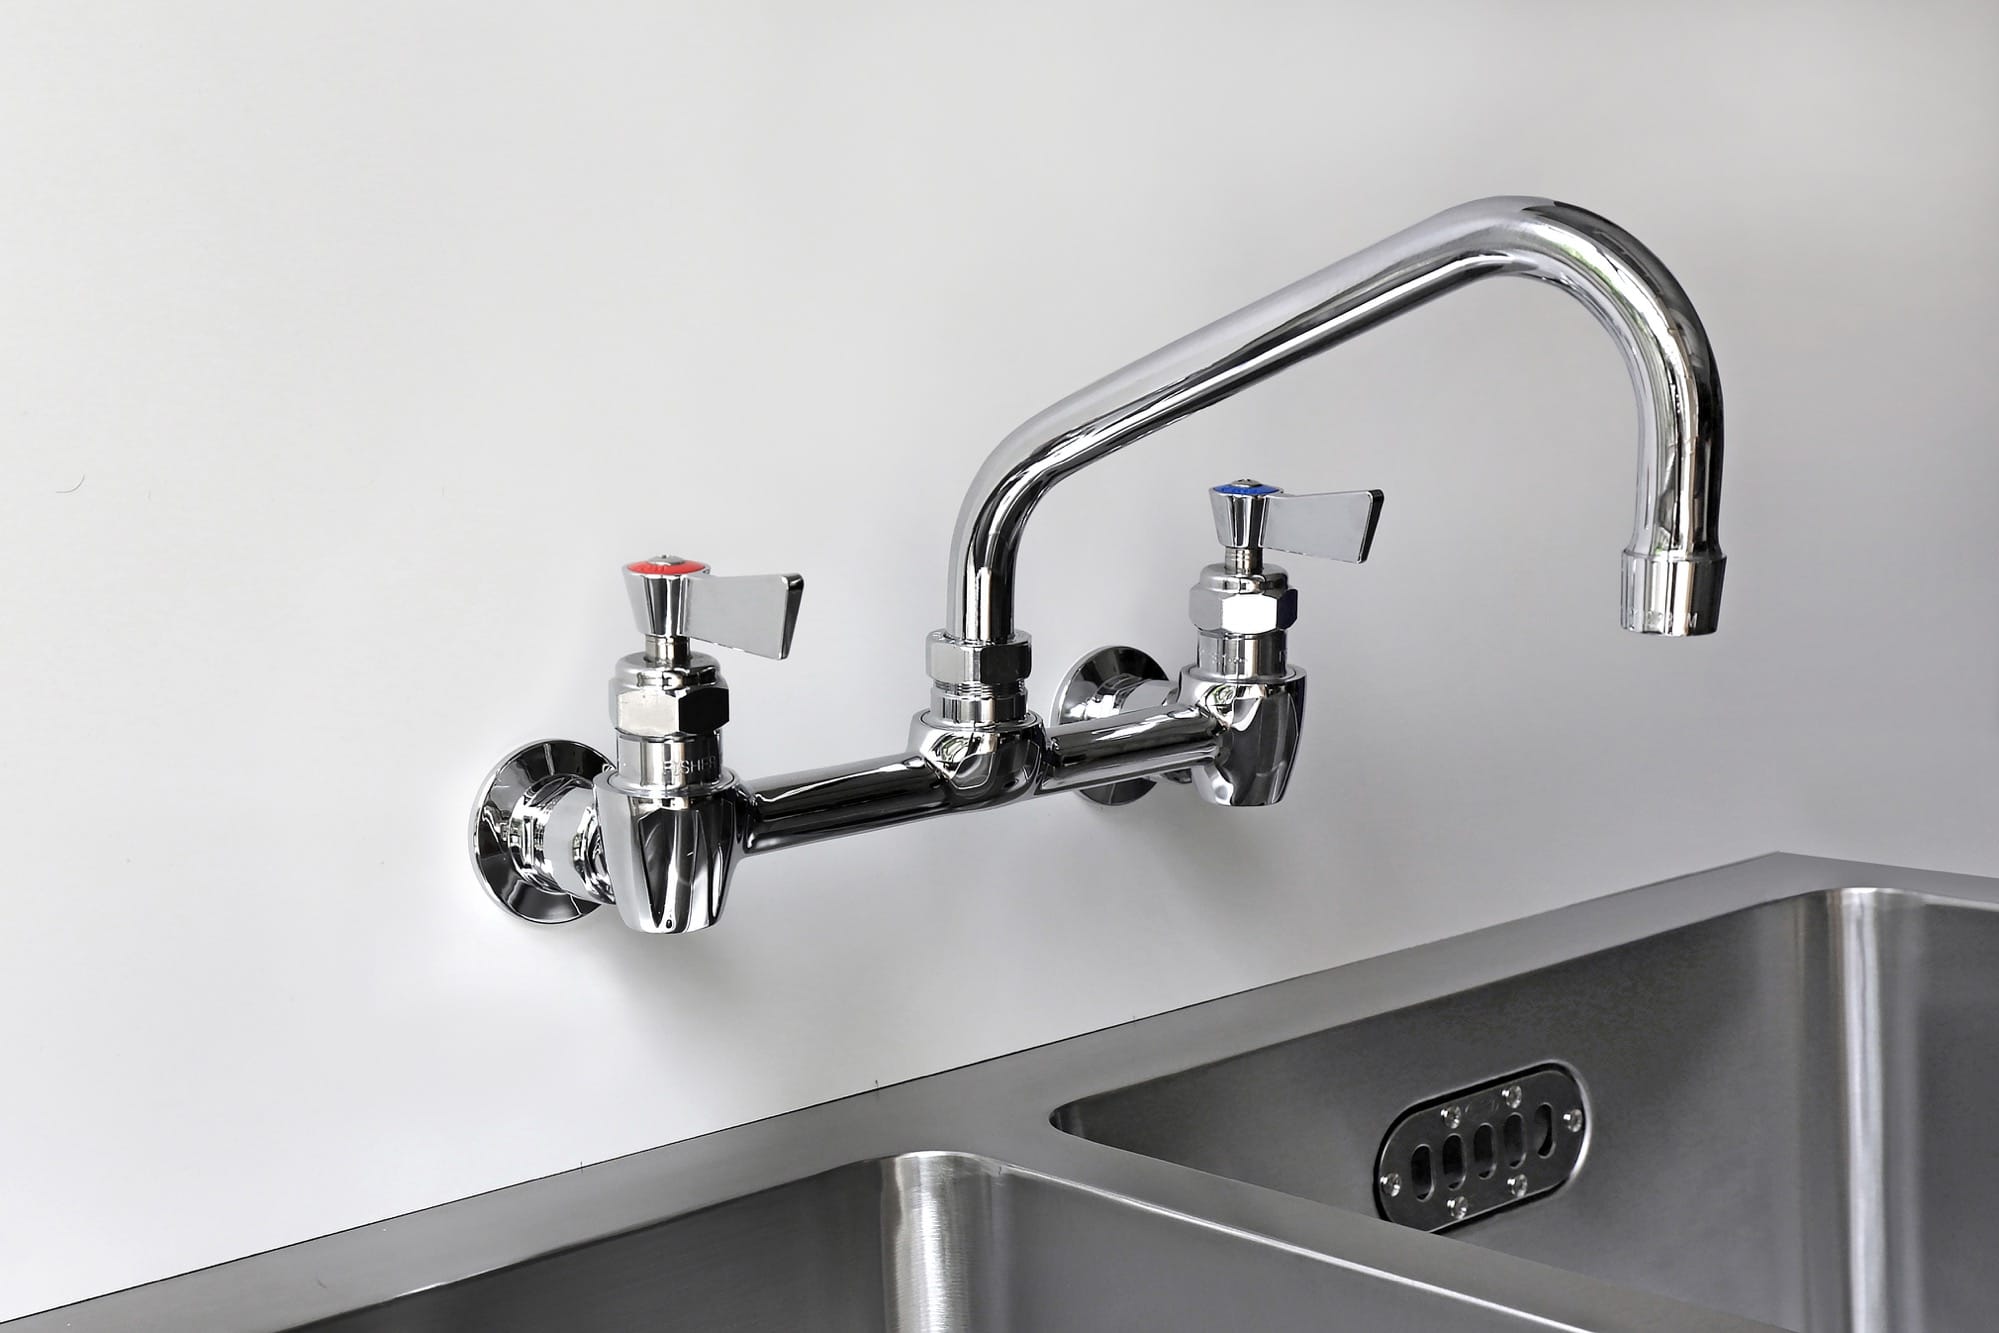 話題の人気 KVK キッチン用 KM6131DECM5 ビルトイン浄水器用シングルシャワー付混合栓 センサー